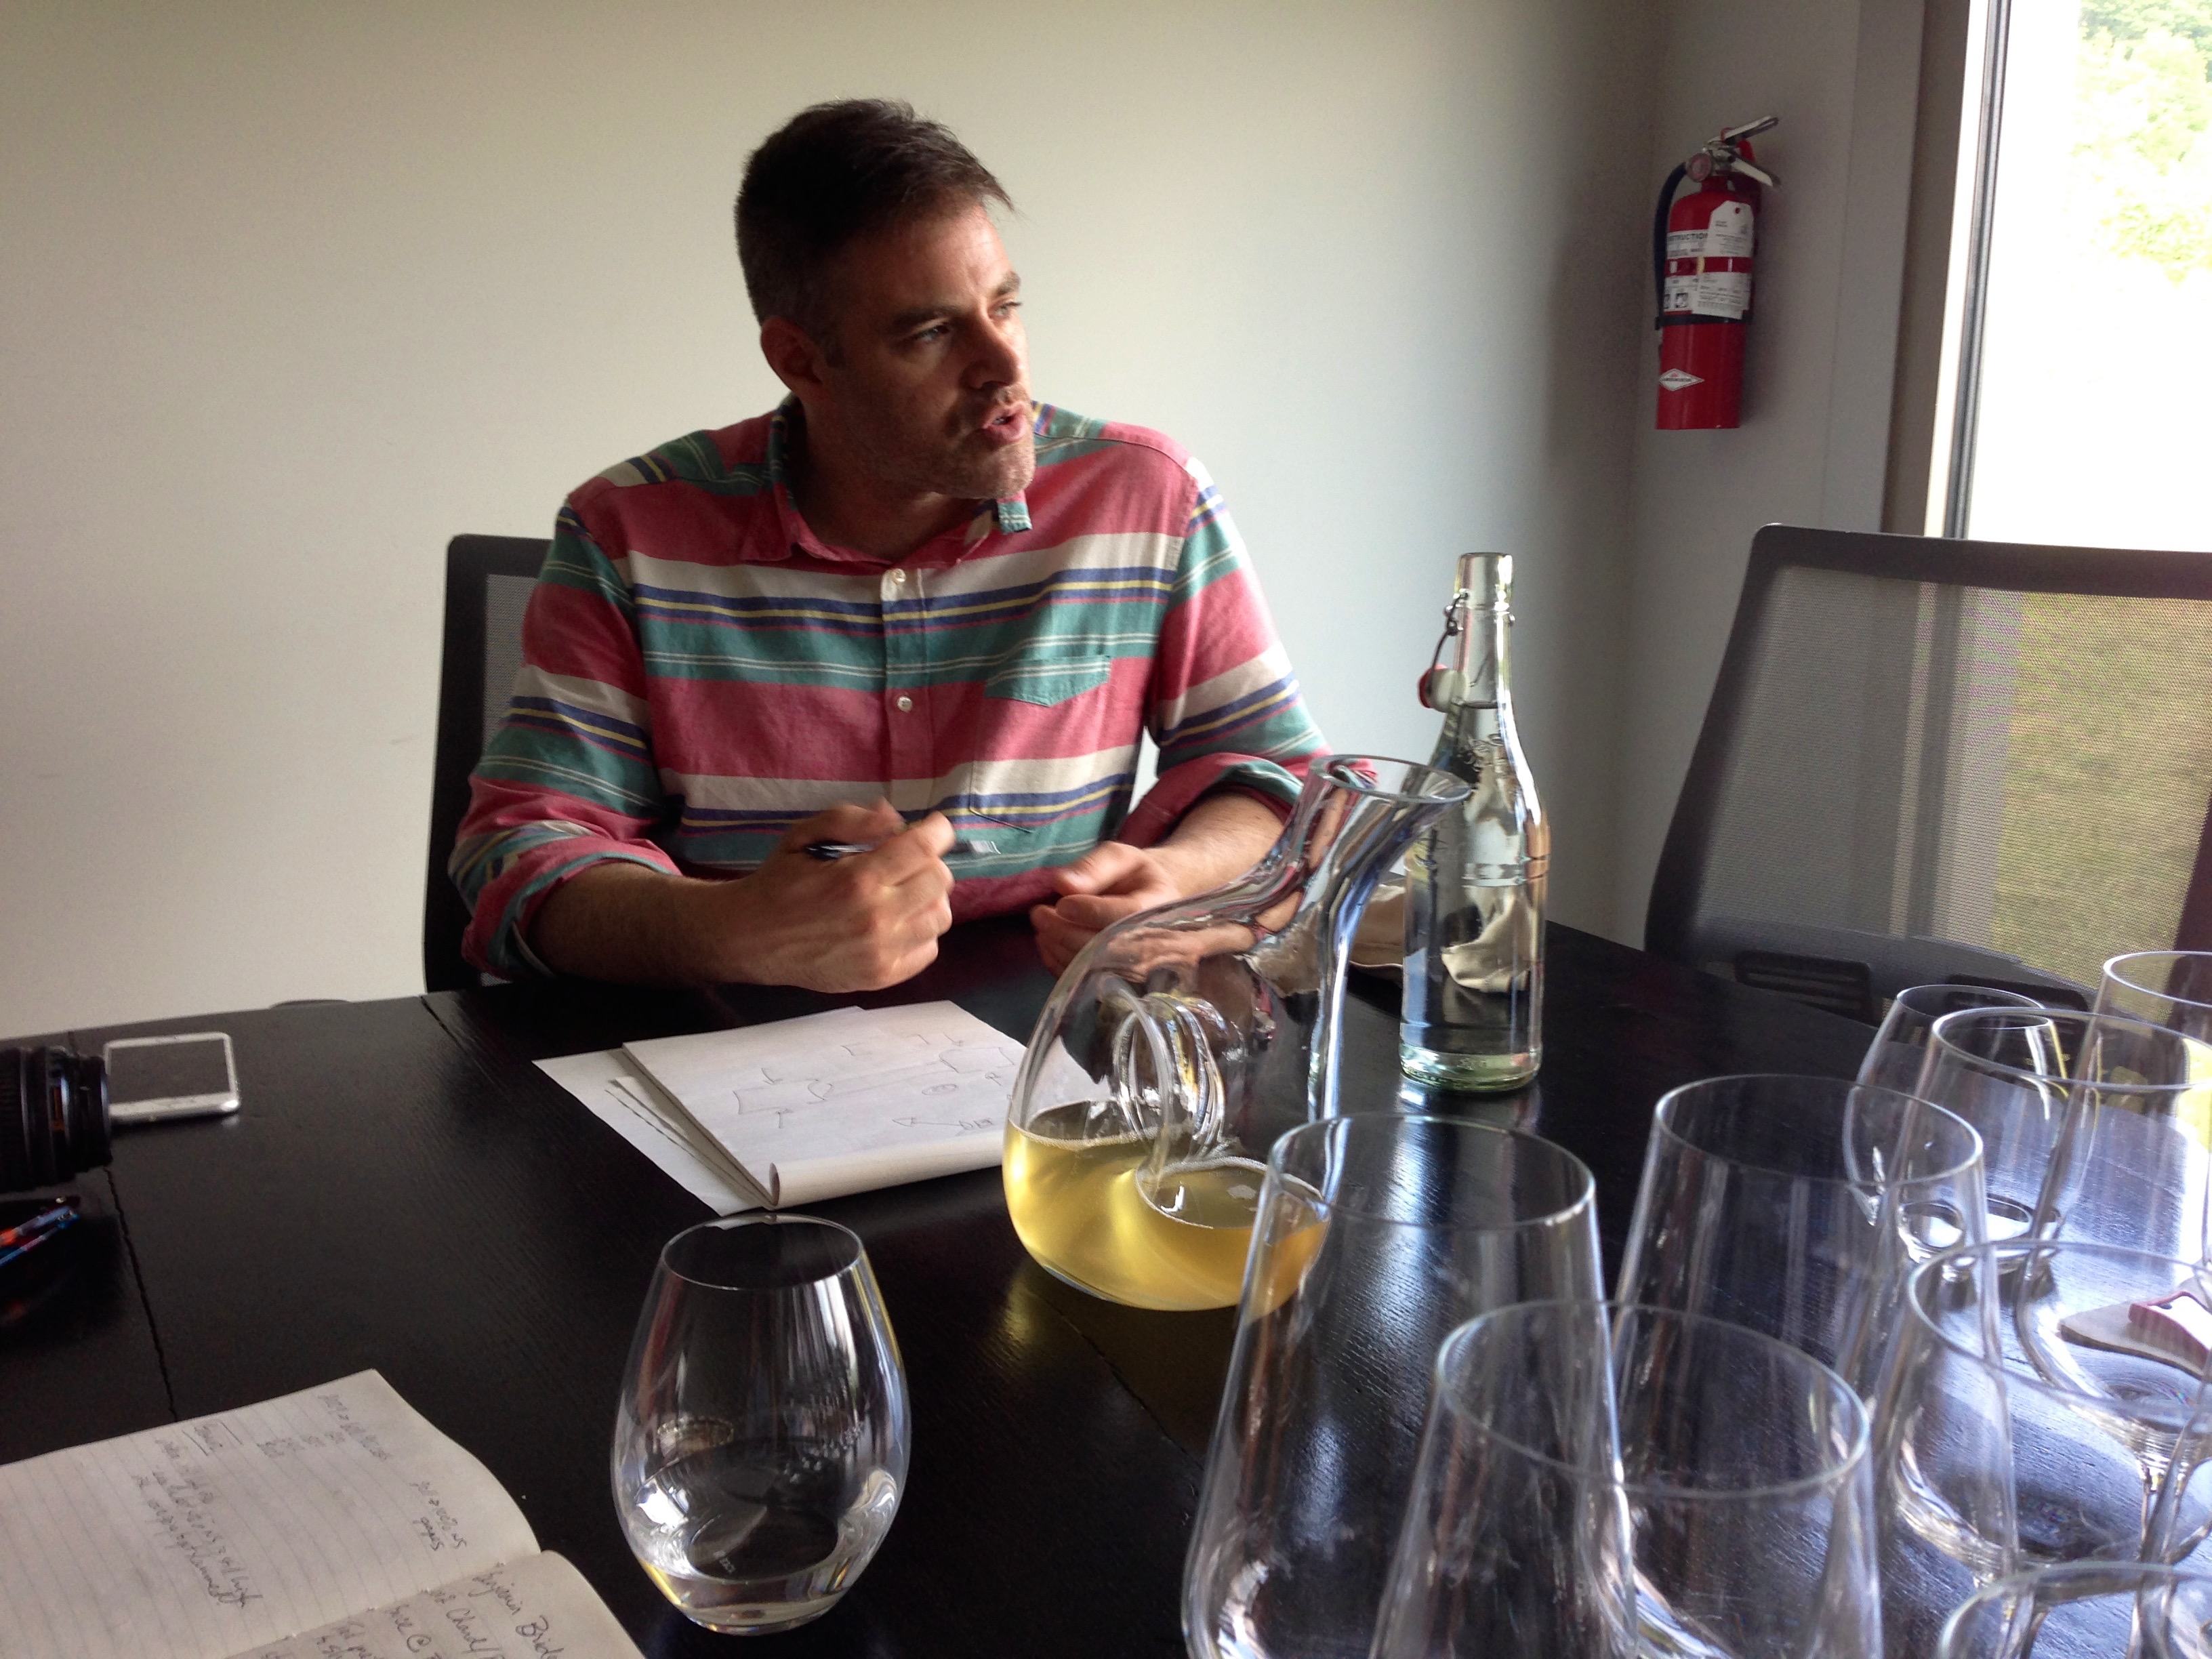 Head winemaker Jean-Benoit Deslauriers discussing the 2015 vintage during a meeting at Benjamin Bridge Vineyards.